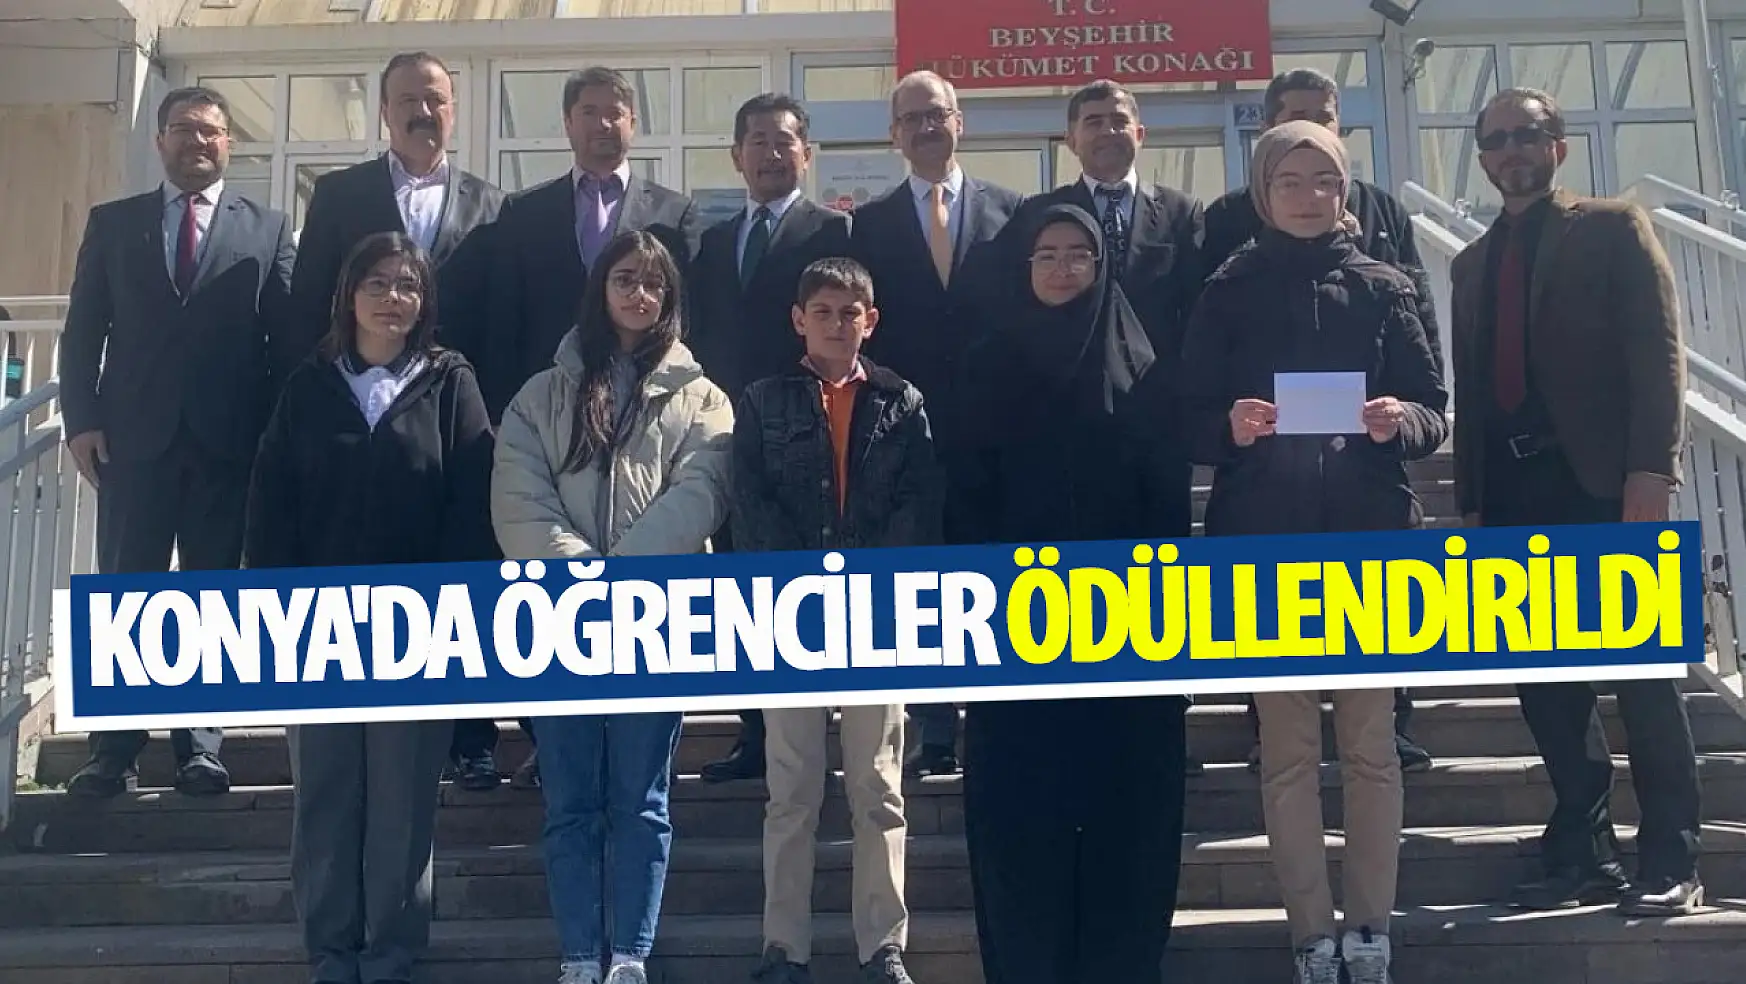 Konya'da öğrenciler ödüllendirildi!